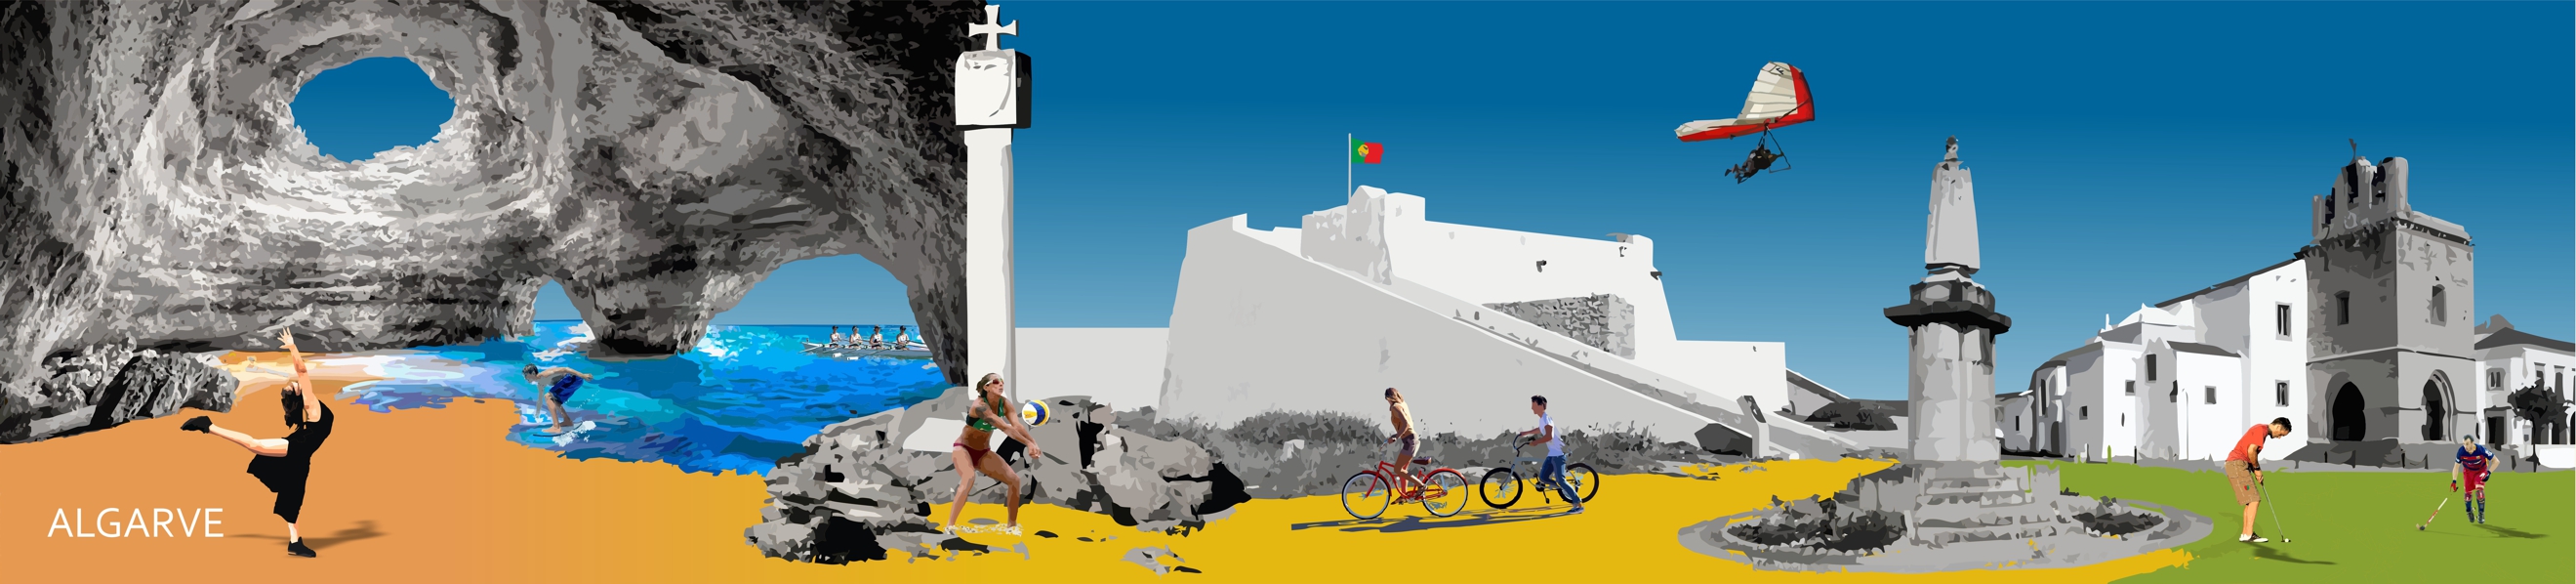 Ilustração de locais característicos da região do Algarve com jovens em atividade nesses diferentes locais: a dançar, a andar de bicicleta, a jogar voleibol, golfe, bodyboard..